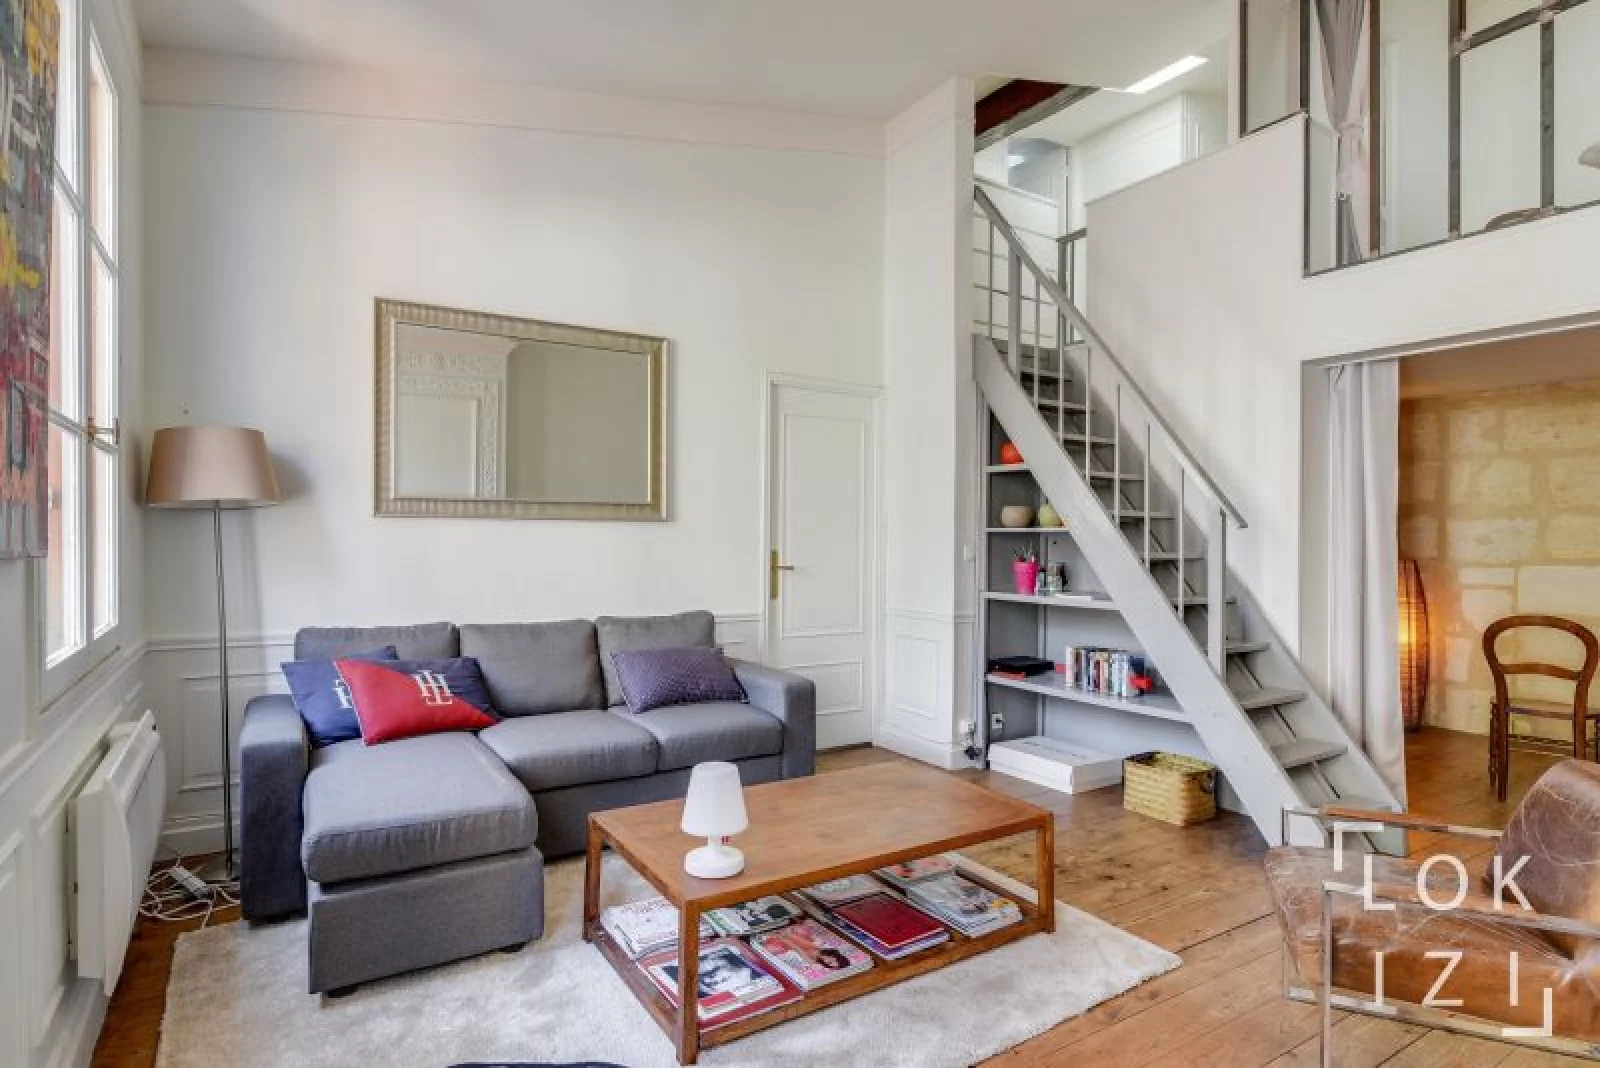 Location appartement meublé 2 pièces 59m² (Bordeaux -Chartrons)